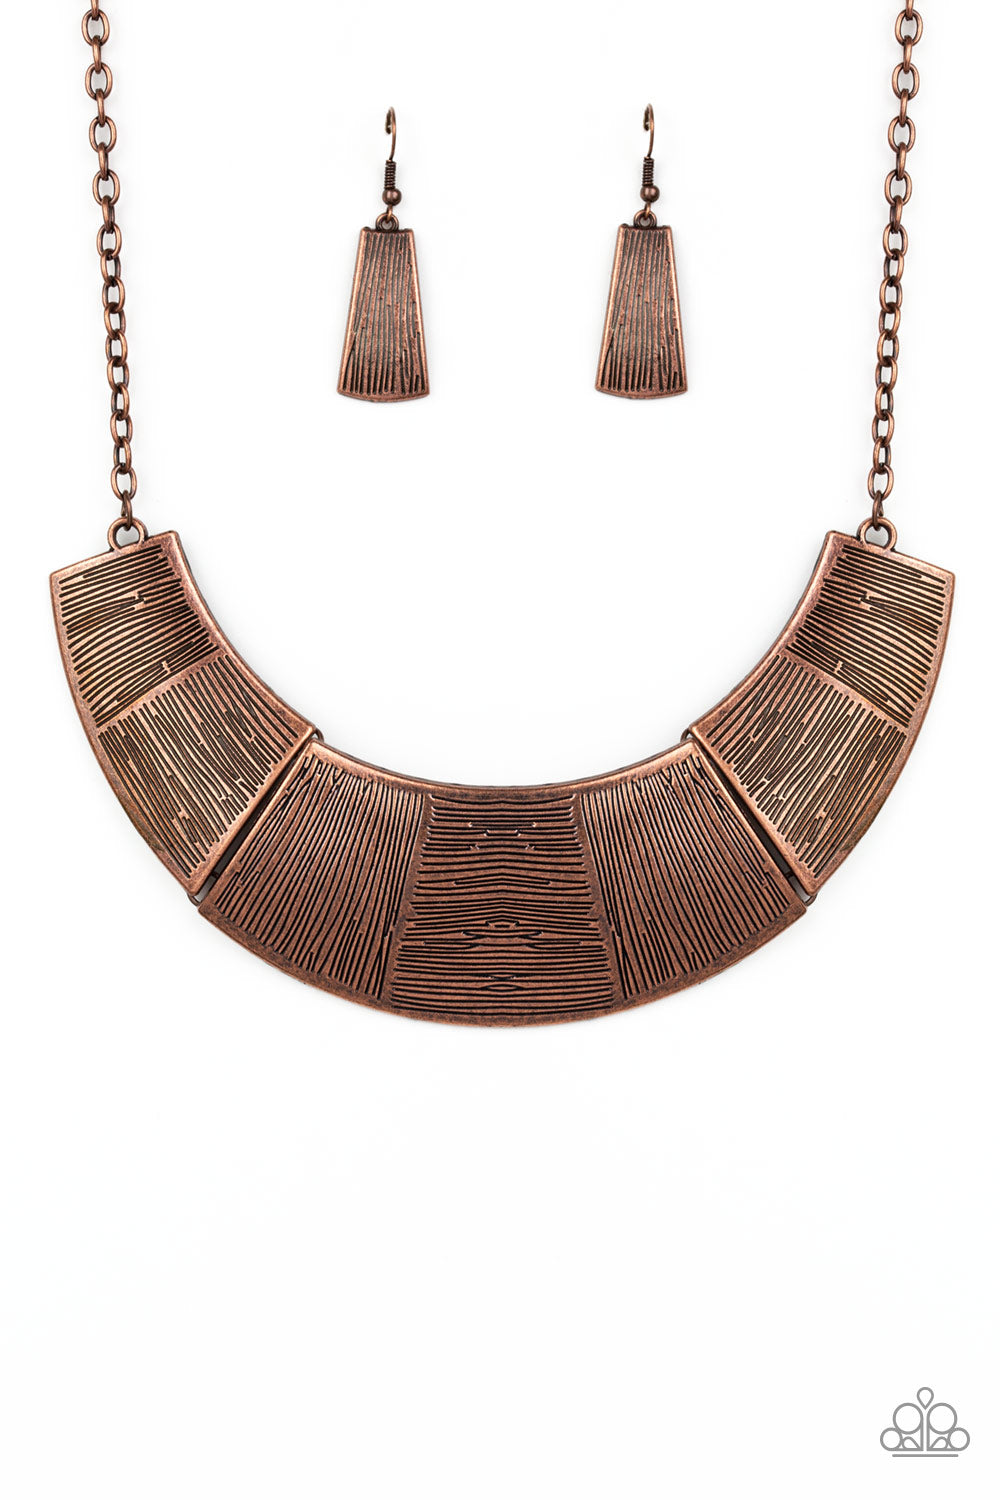 More Roar - Copper Necklace Set